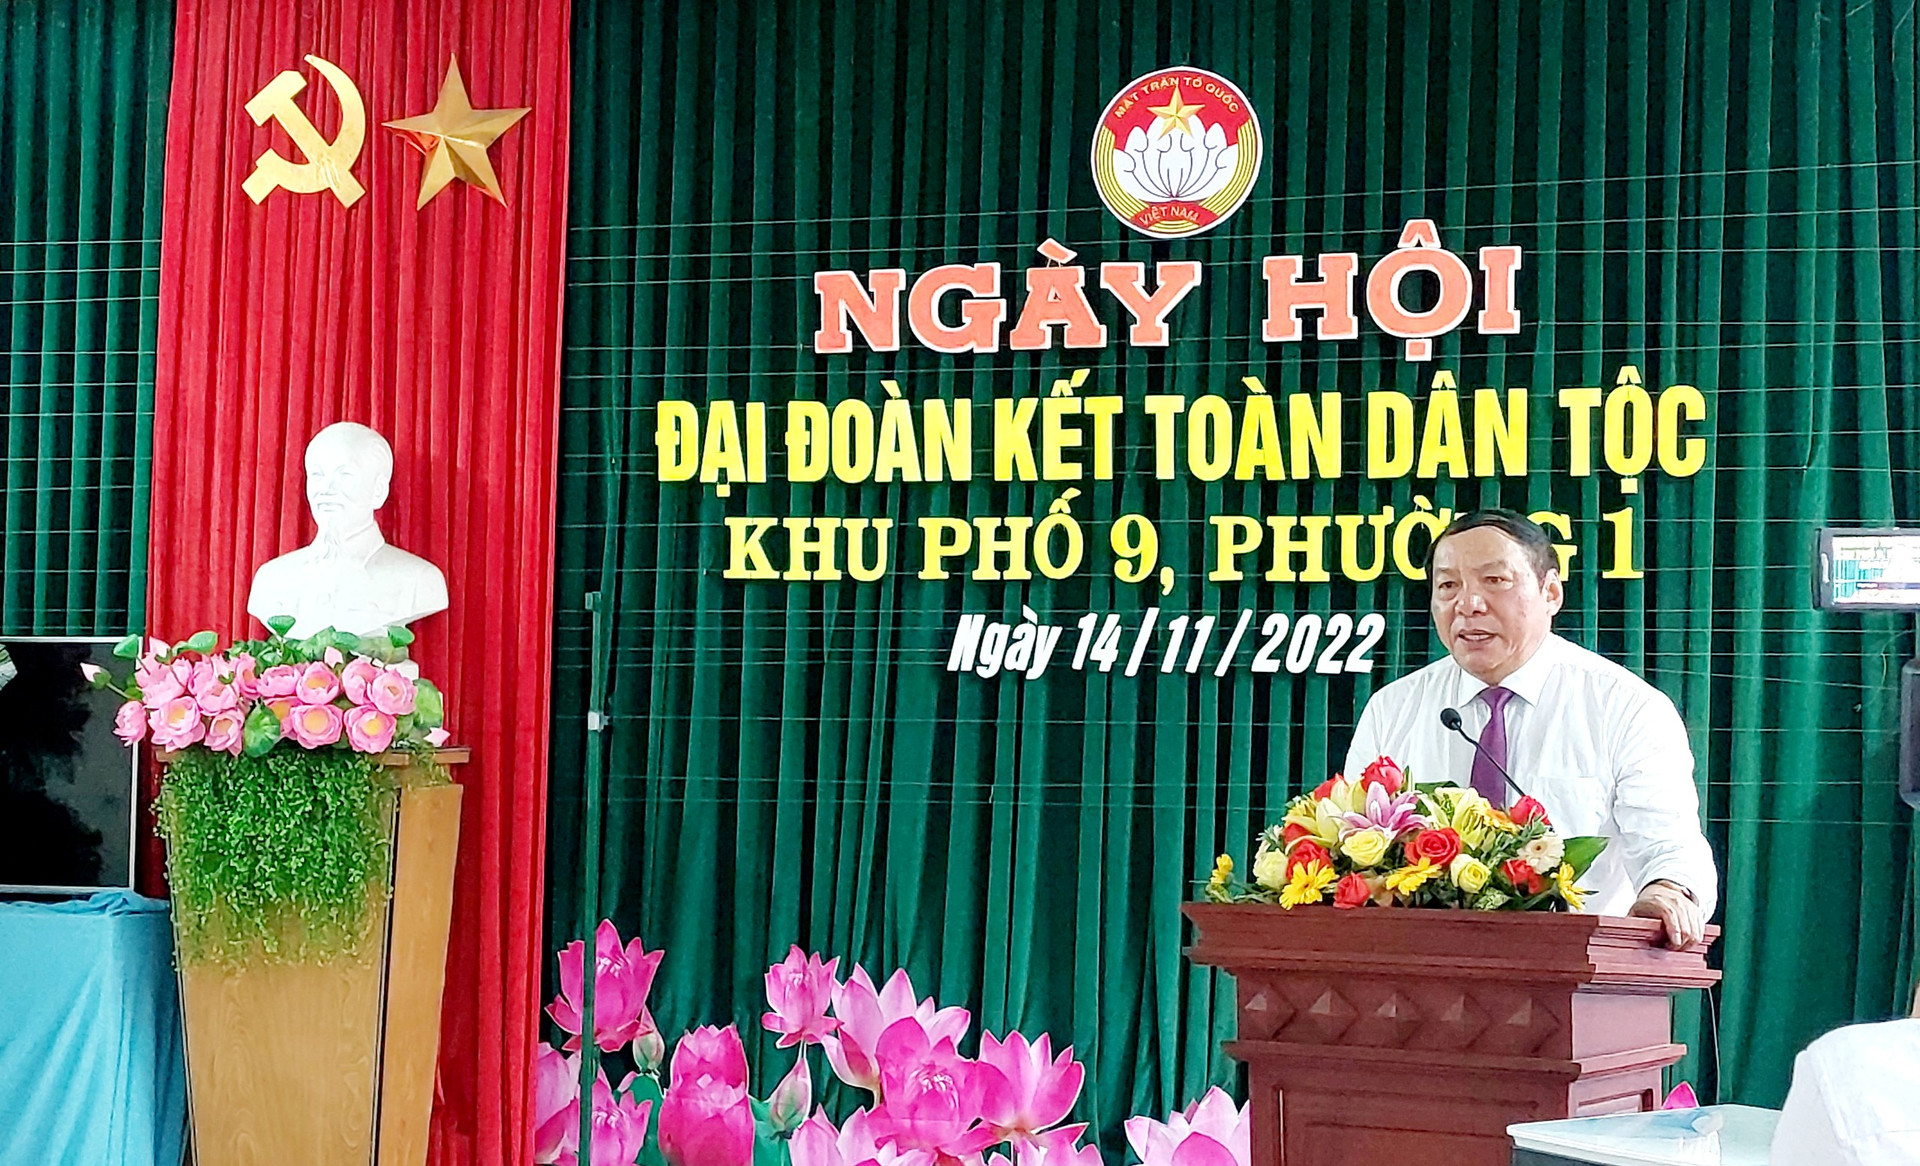 Ông Nguyễn Văn Hùng phát biểu tại Ngày hội.